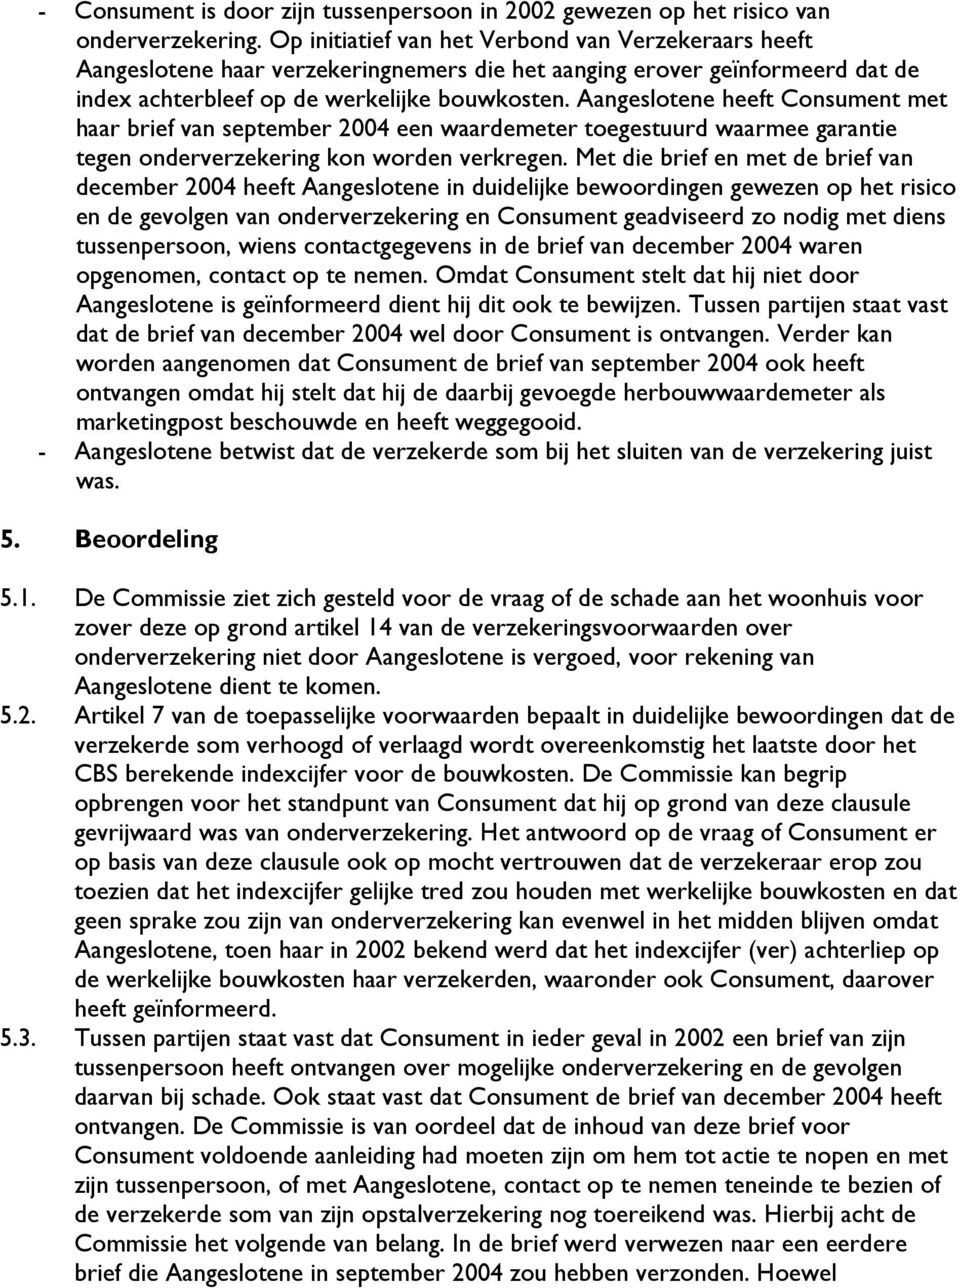 Aangeslotene heeft Consument met haar brief van september 2004 een waardemeter toegestuurd waarmee garantie tegen onderverzekering kon worden verkregen.